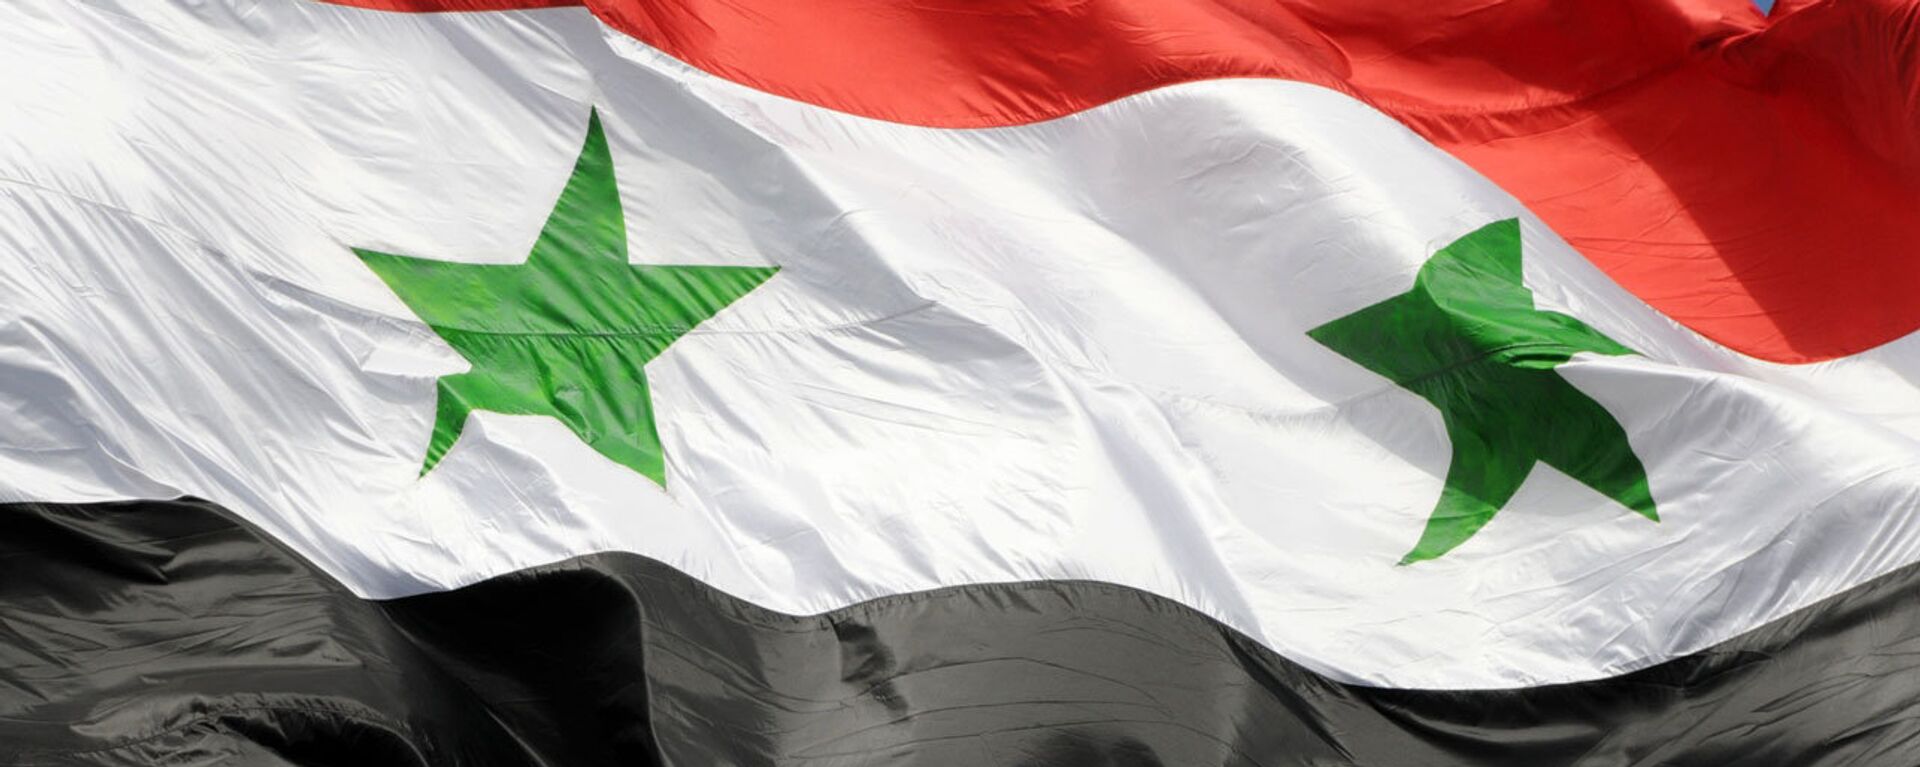 La bandera de Siria - Sputnik Mundo, 1920, 06.03.2021